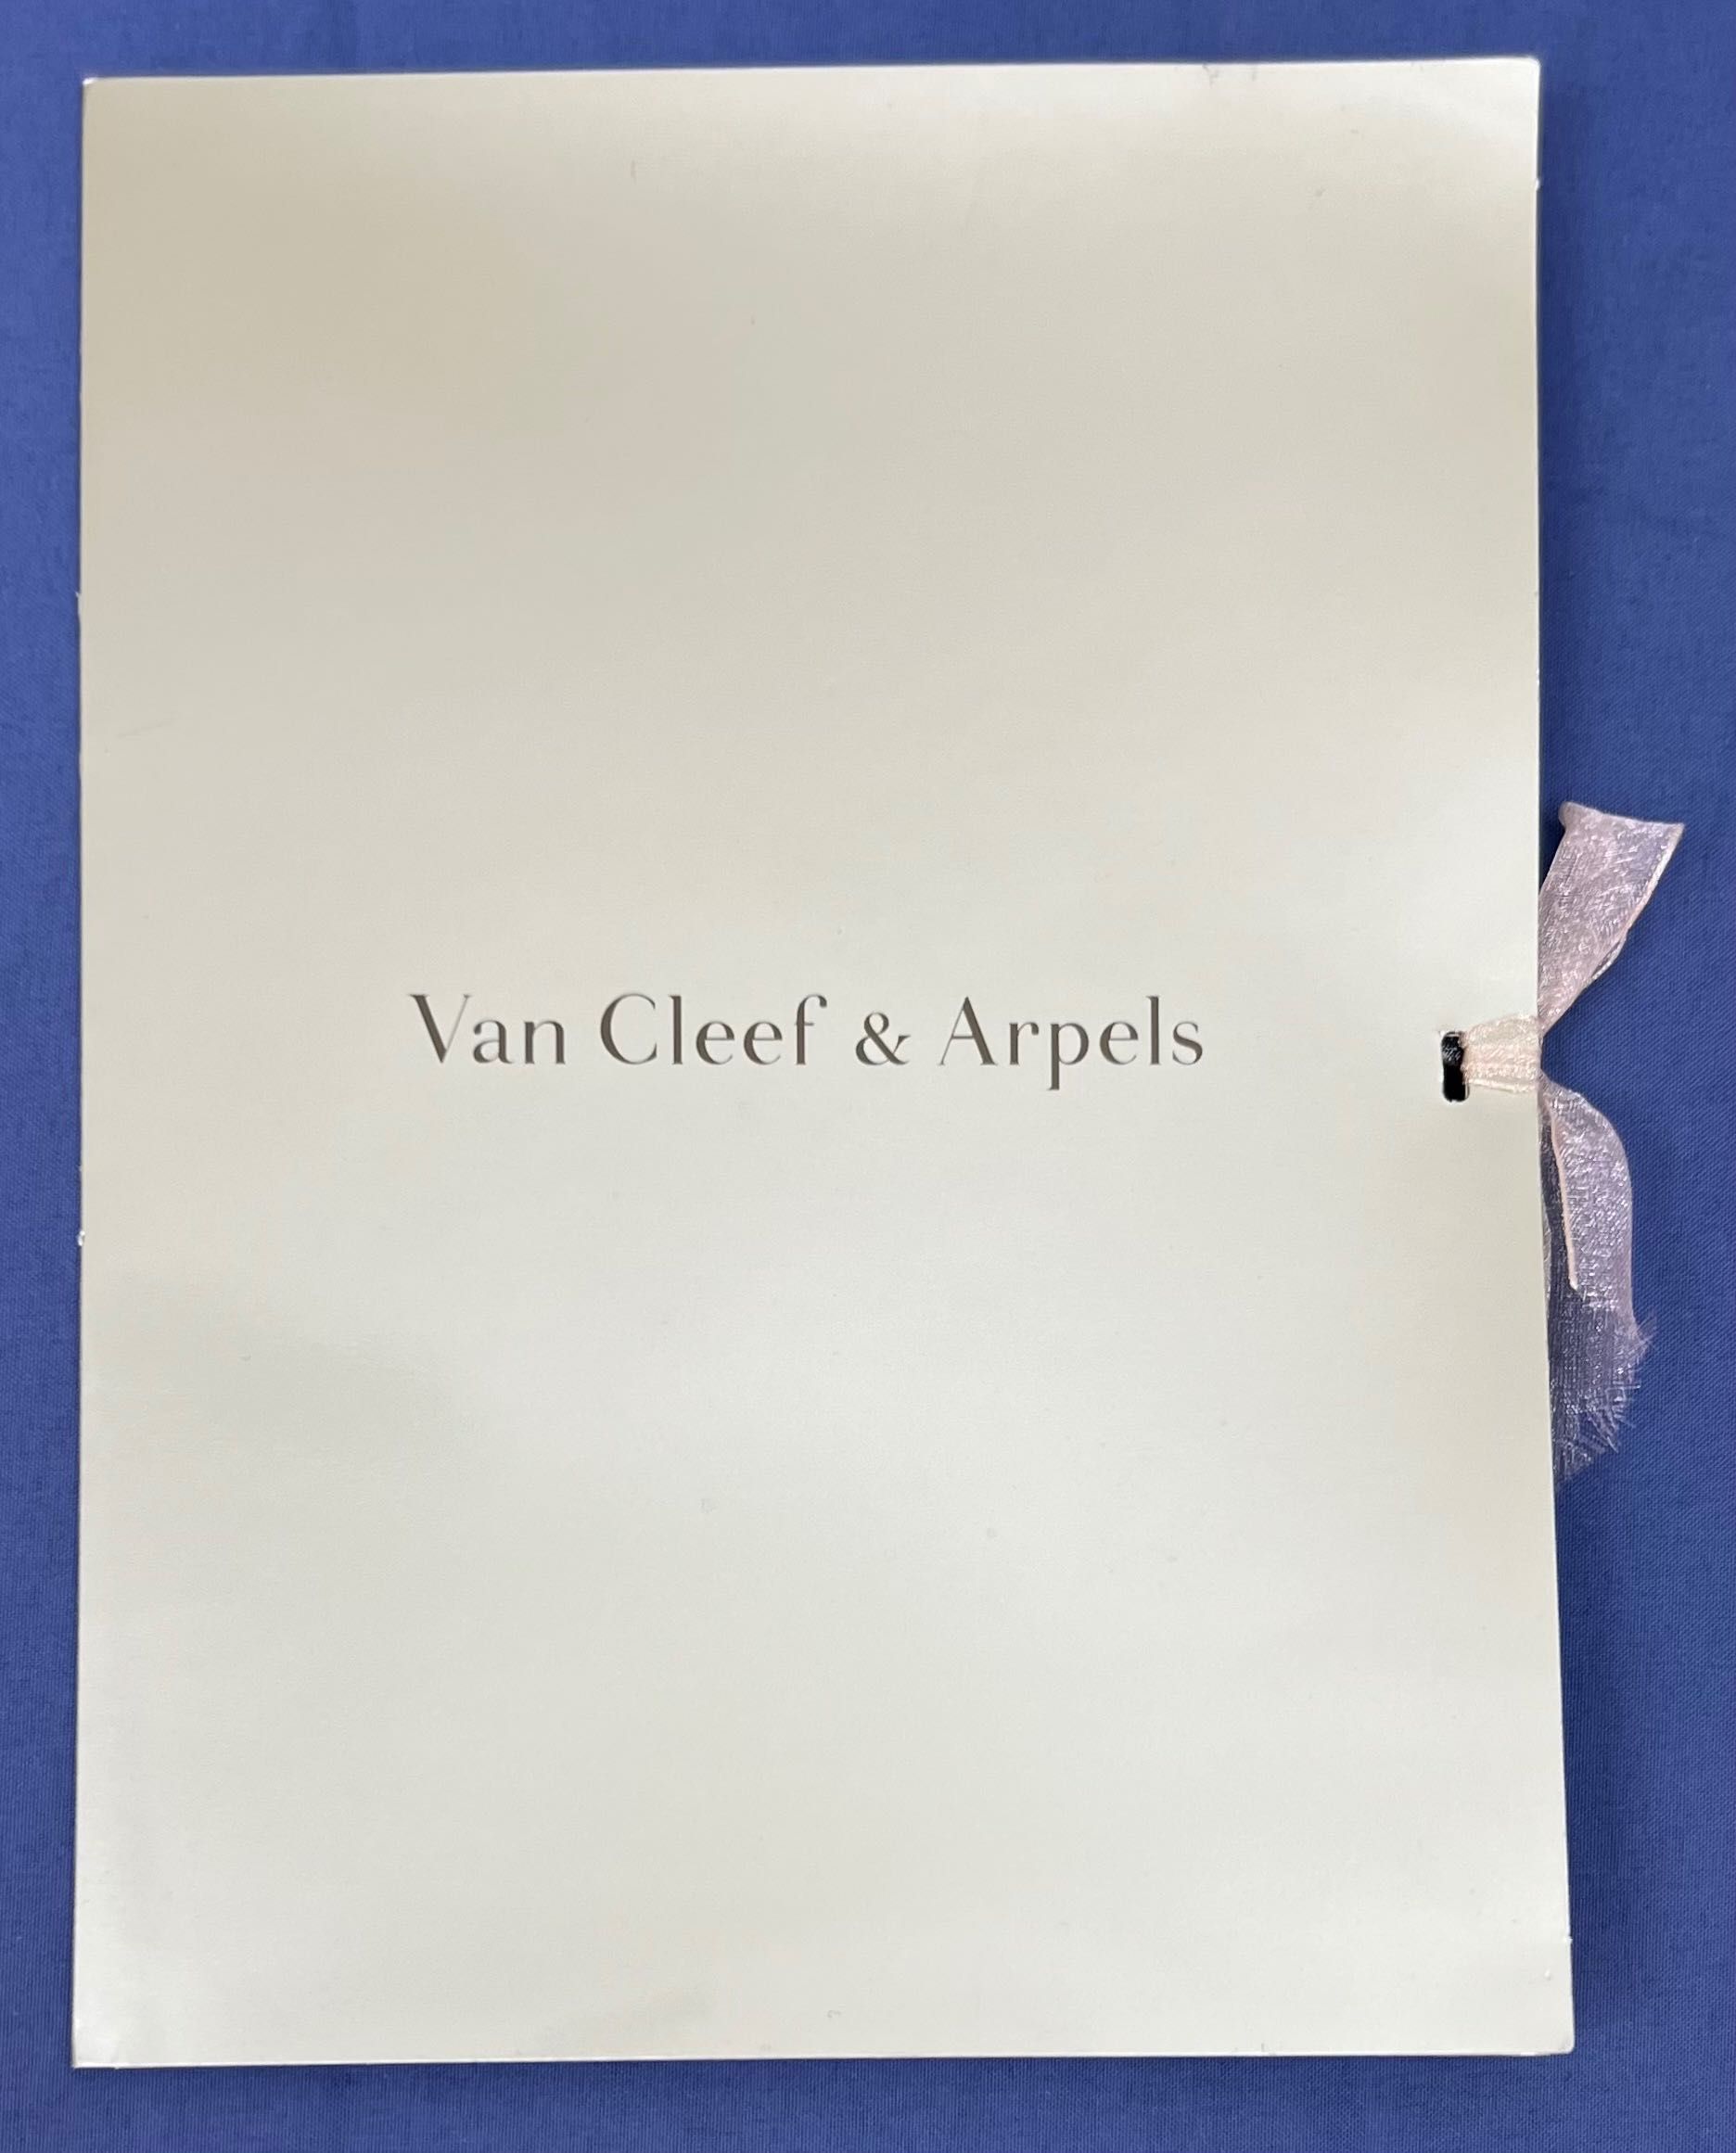 Серьги и кольцо Van Cleef and Arpels (оригинал) бриллианты